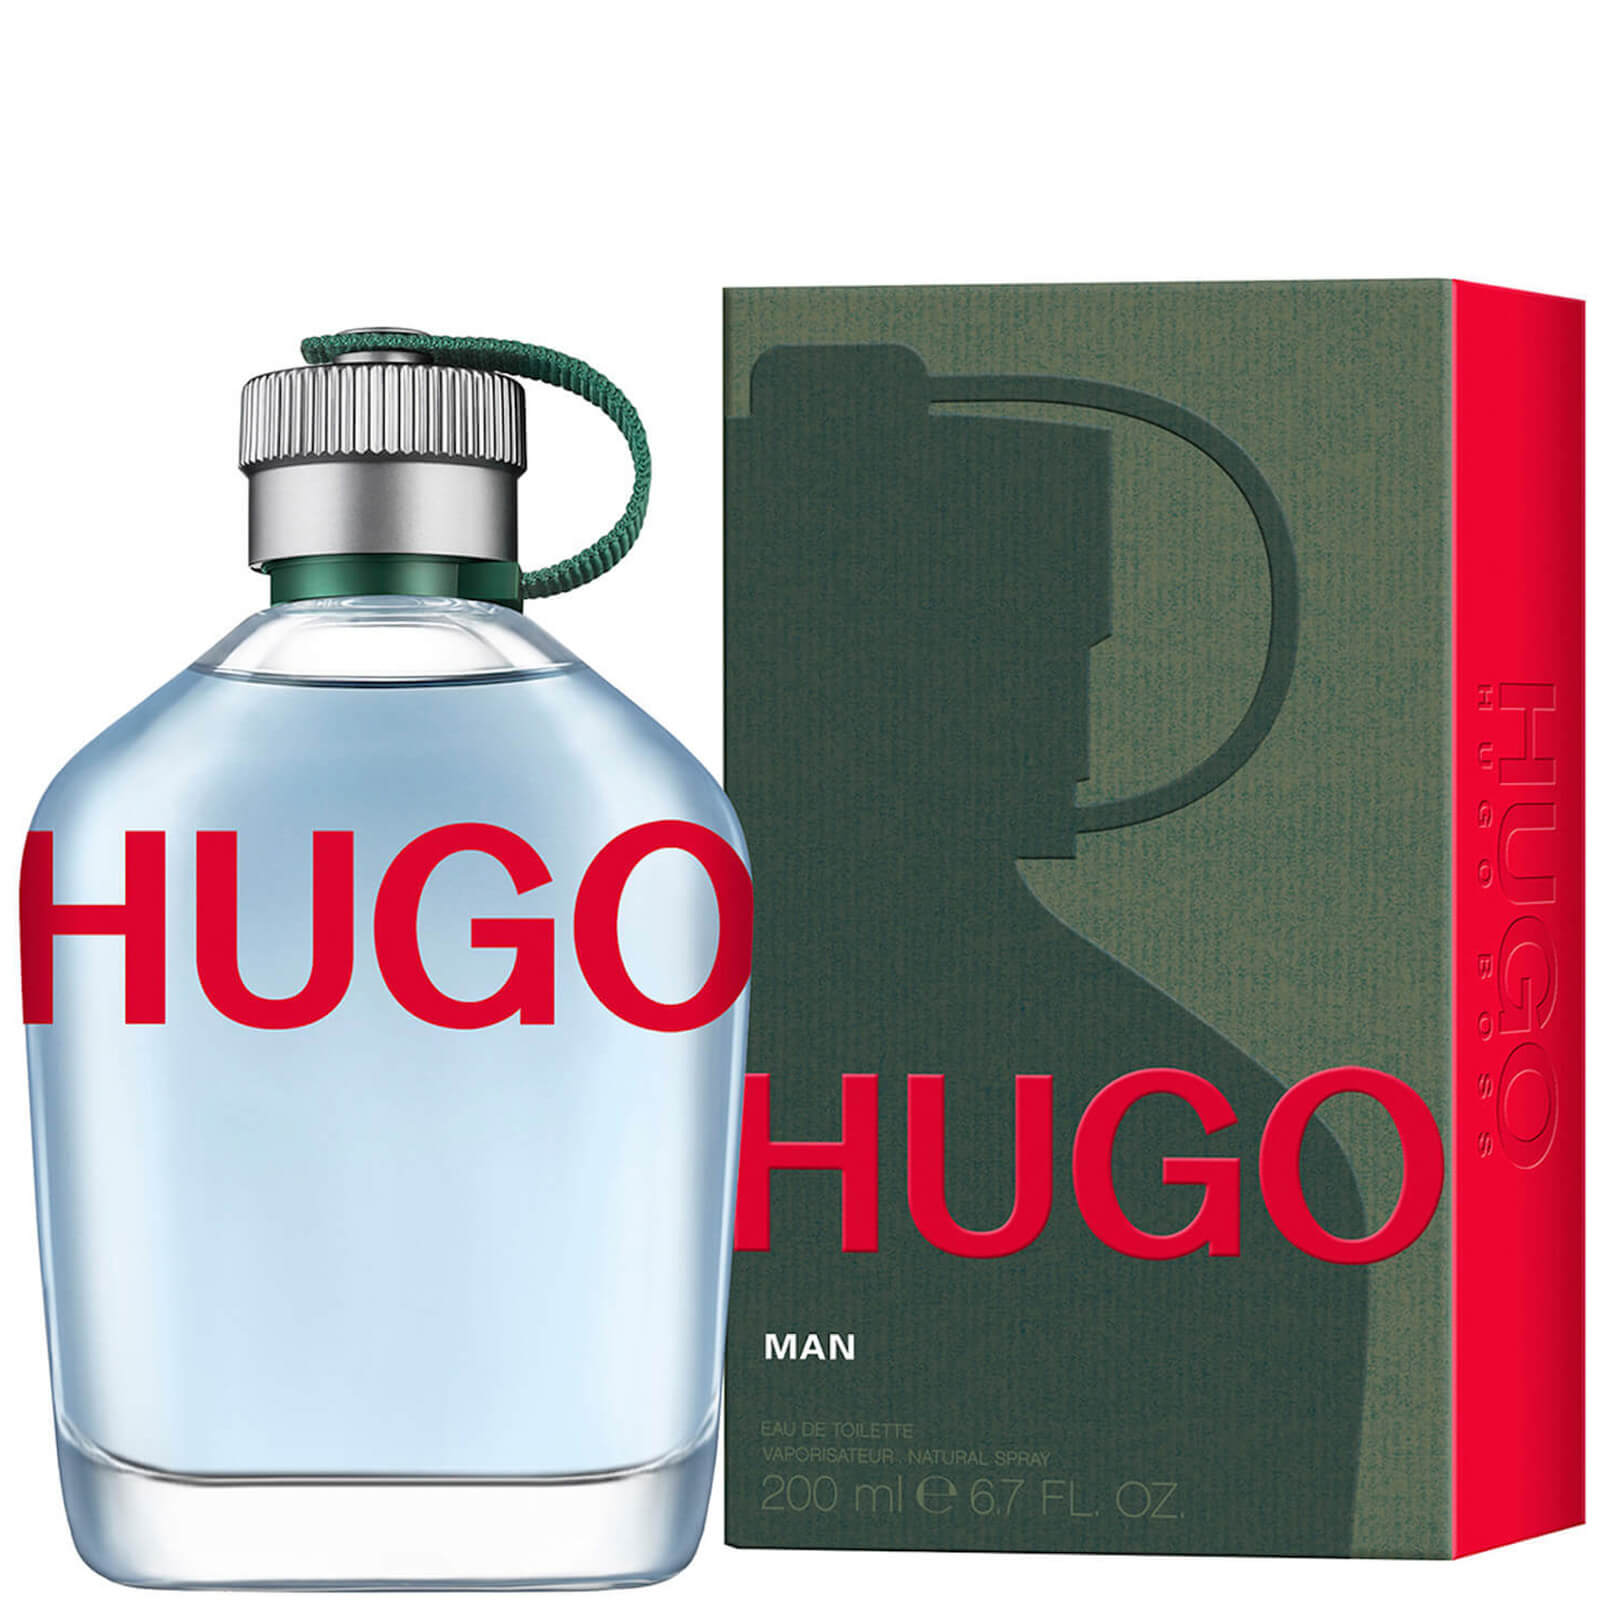 Image of HUGO BOSS HUGO Man Eau de Toilette 200ml